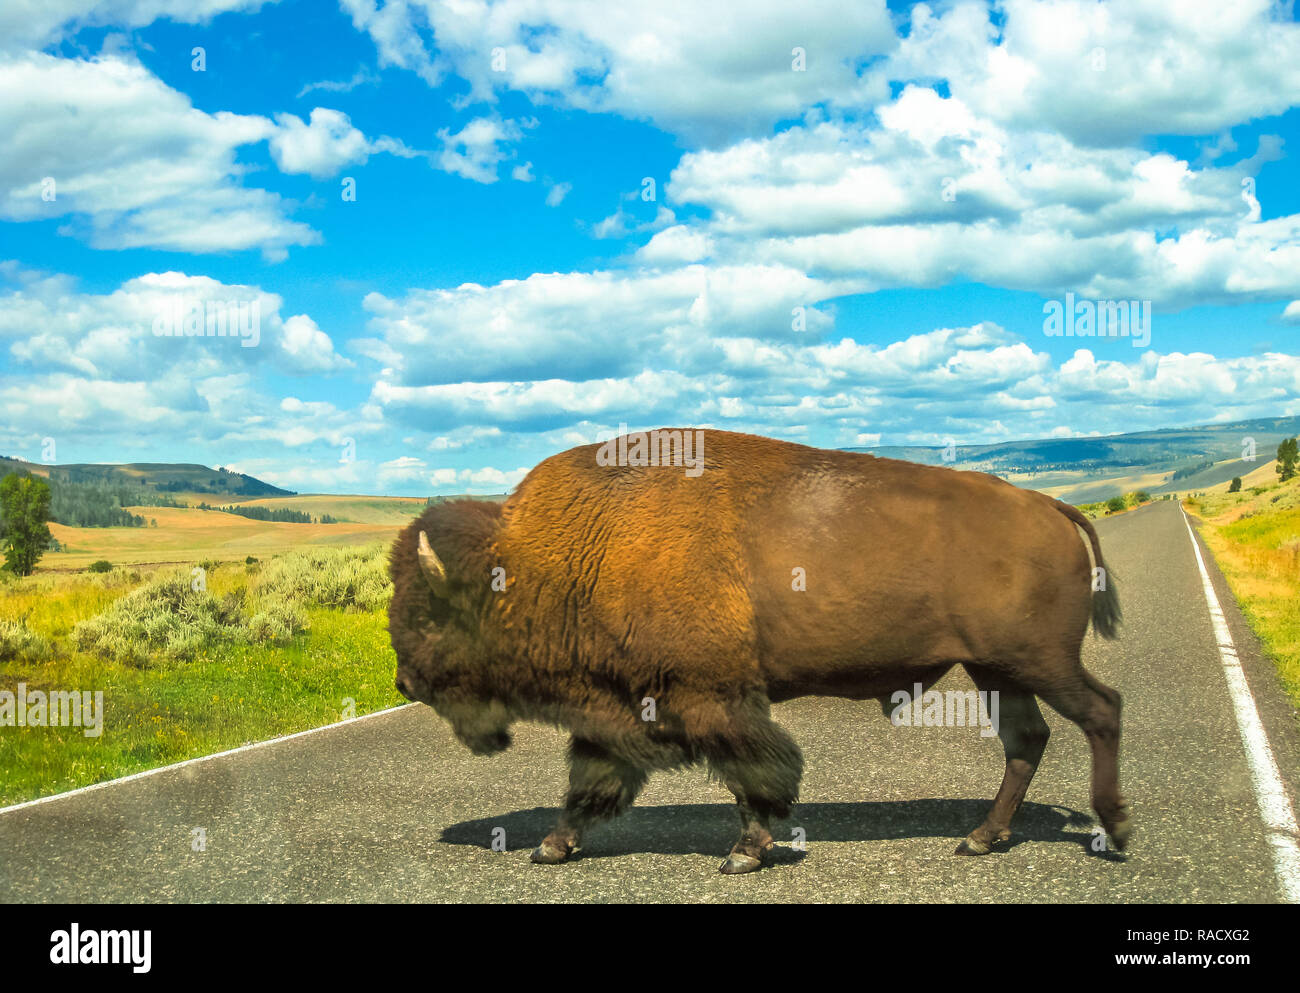 Vista lateral del adulto American Buffalo cruce la carretera en el Parque Nacional Yellowstone, Wyoming, Montana e Idaho, Estados Unidos. El Bison es un símbolo del Oeste Americano. Temporada de verano con el cielo nublado Foto de stock